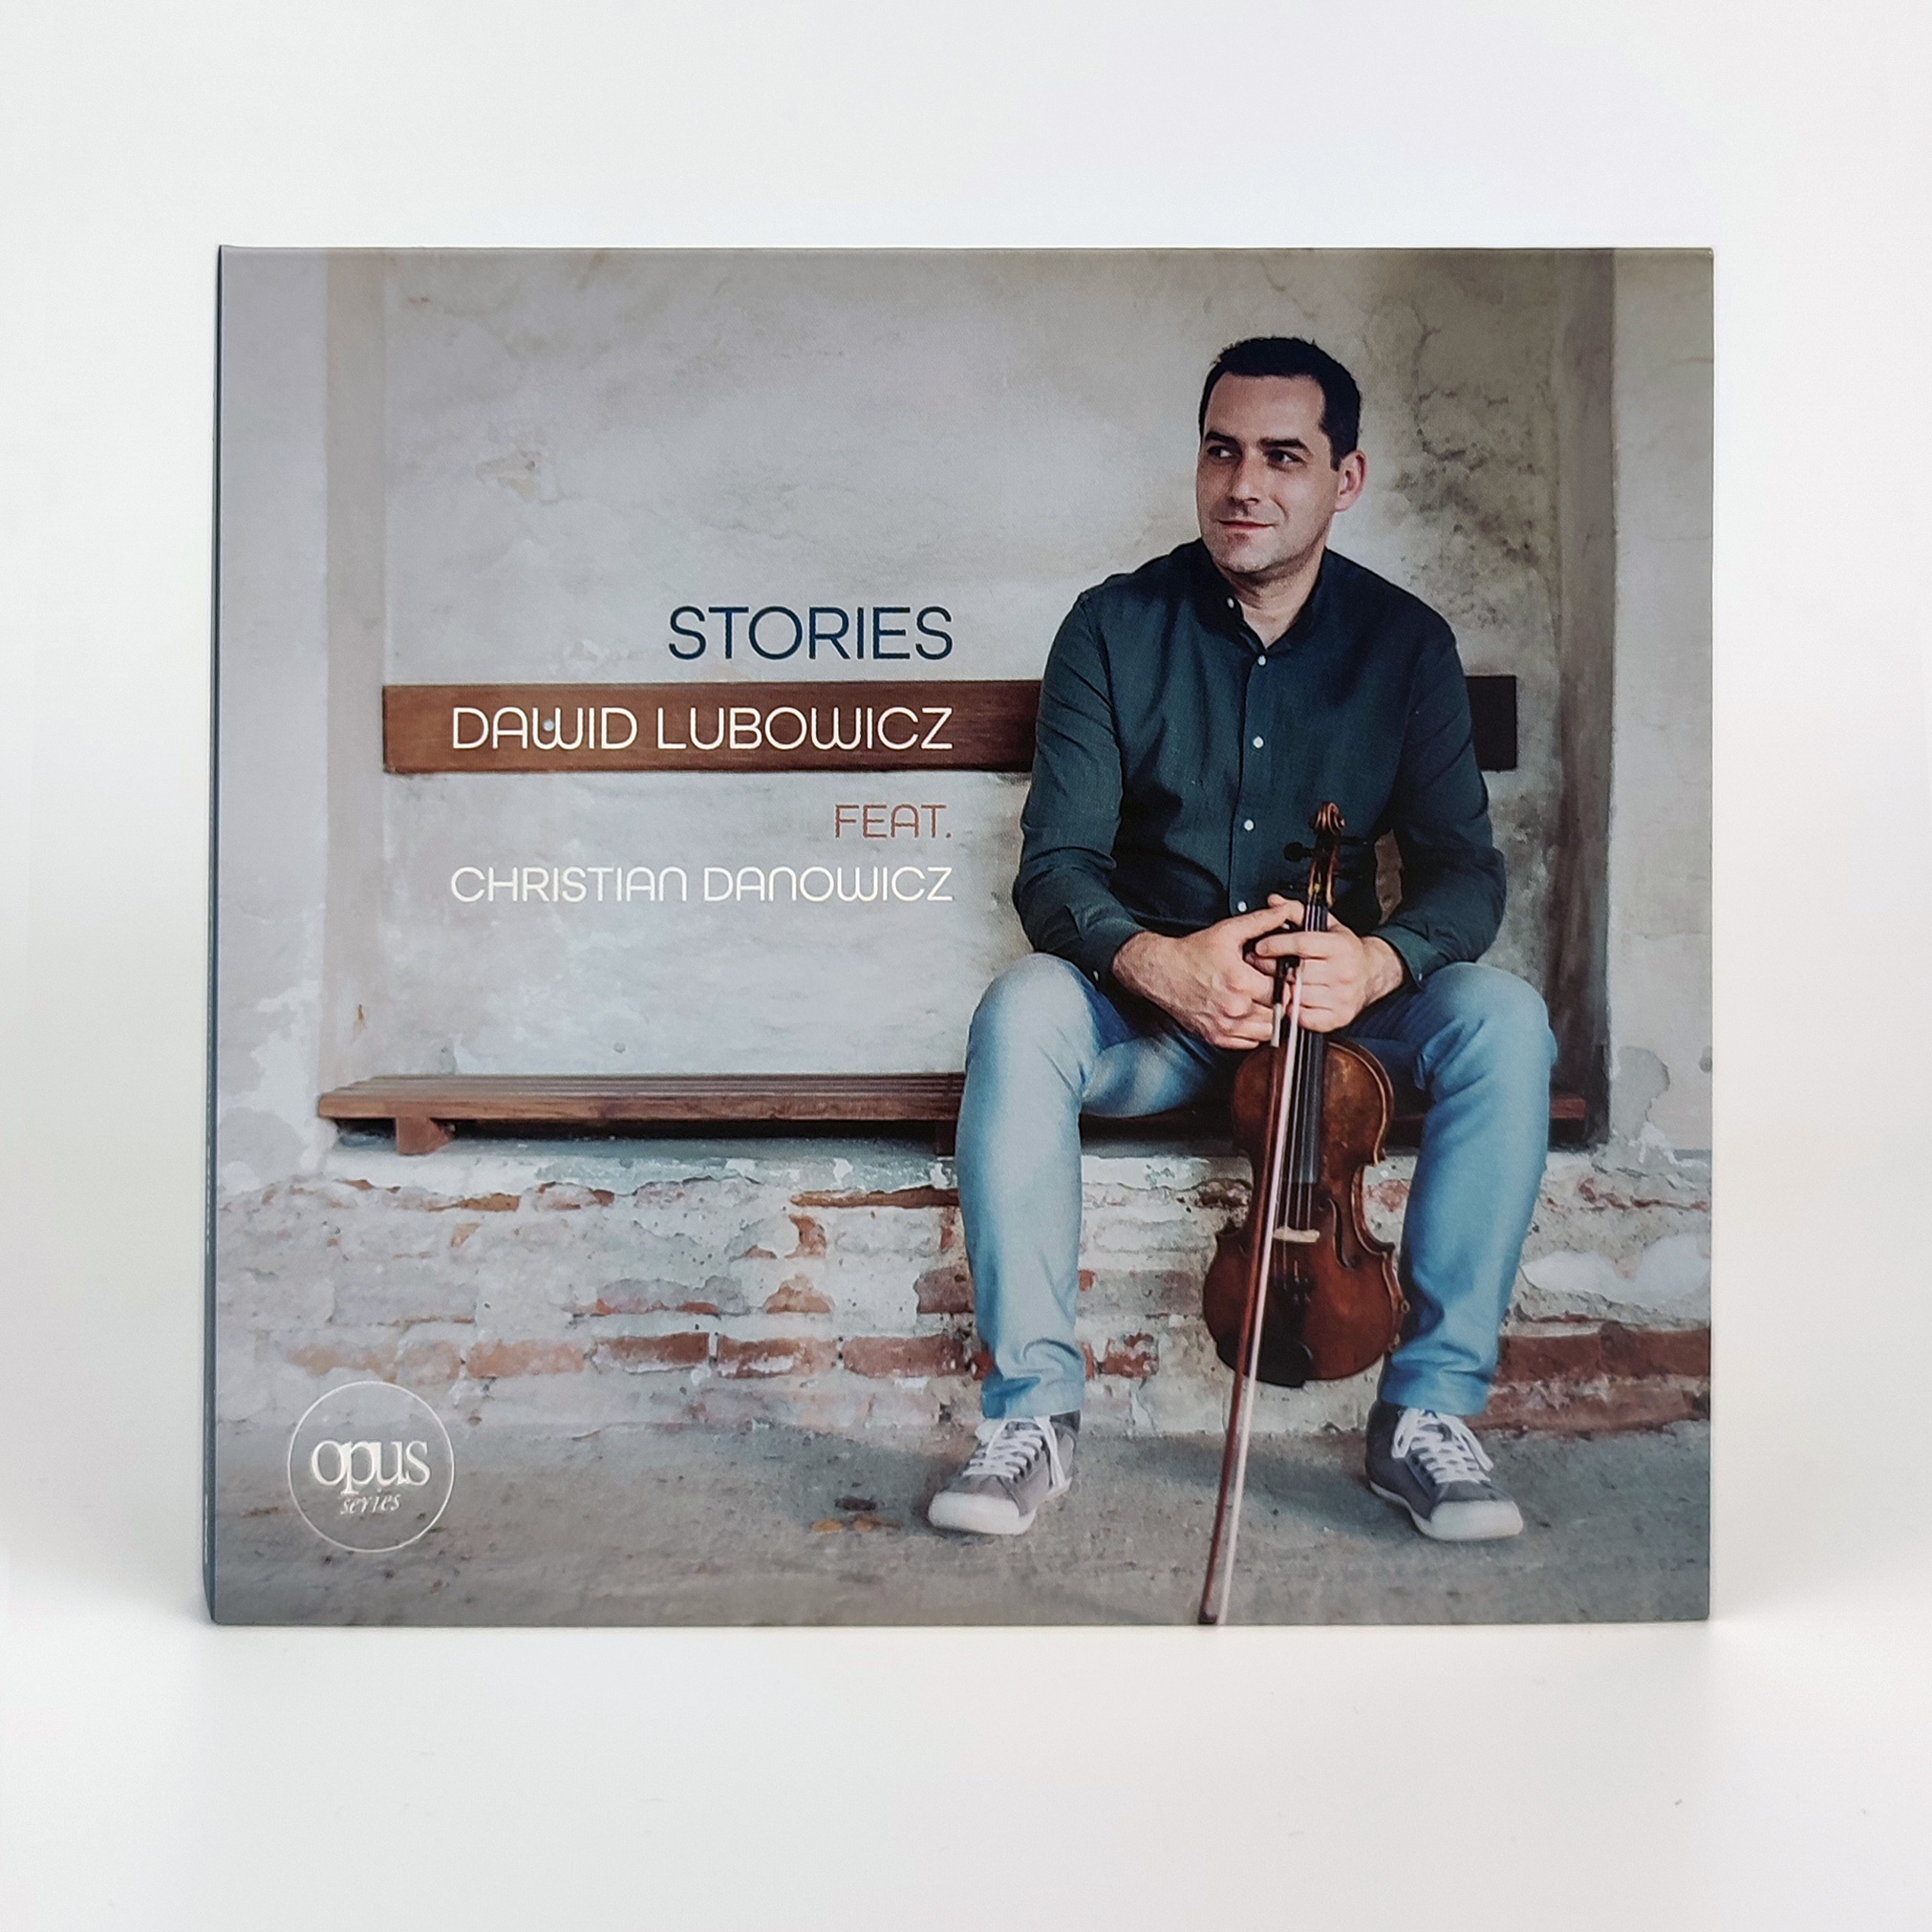 STORIES – Nowa płyta / New album